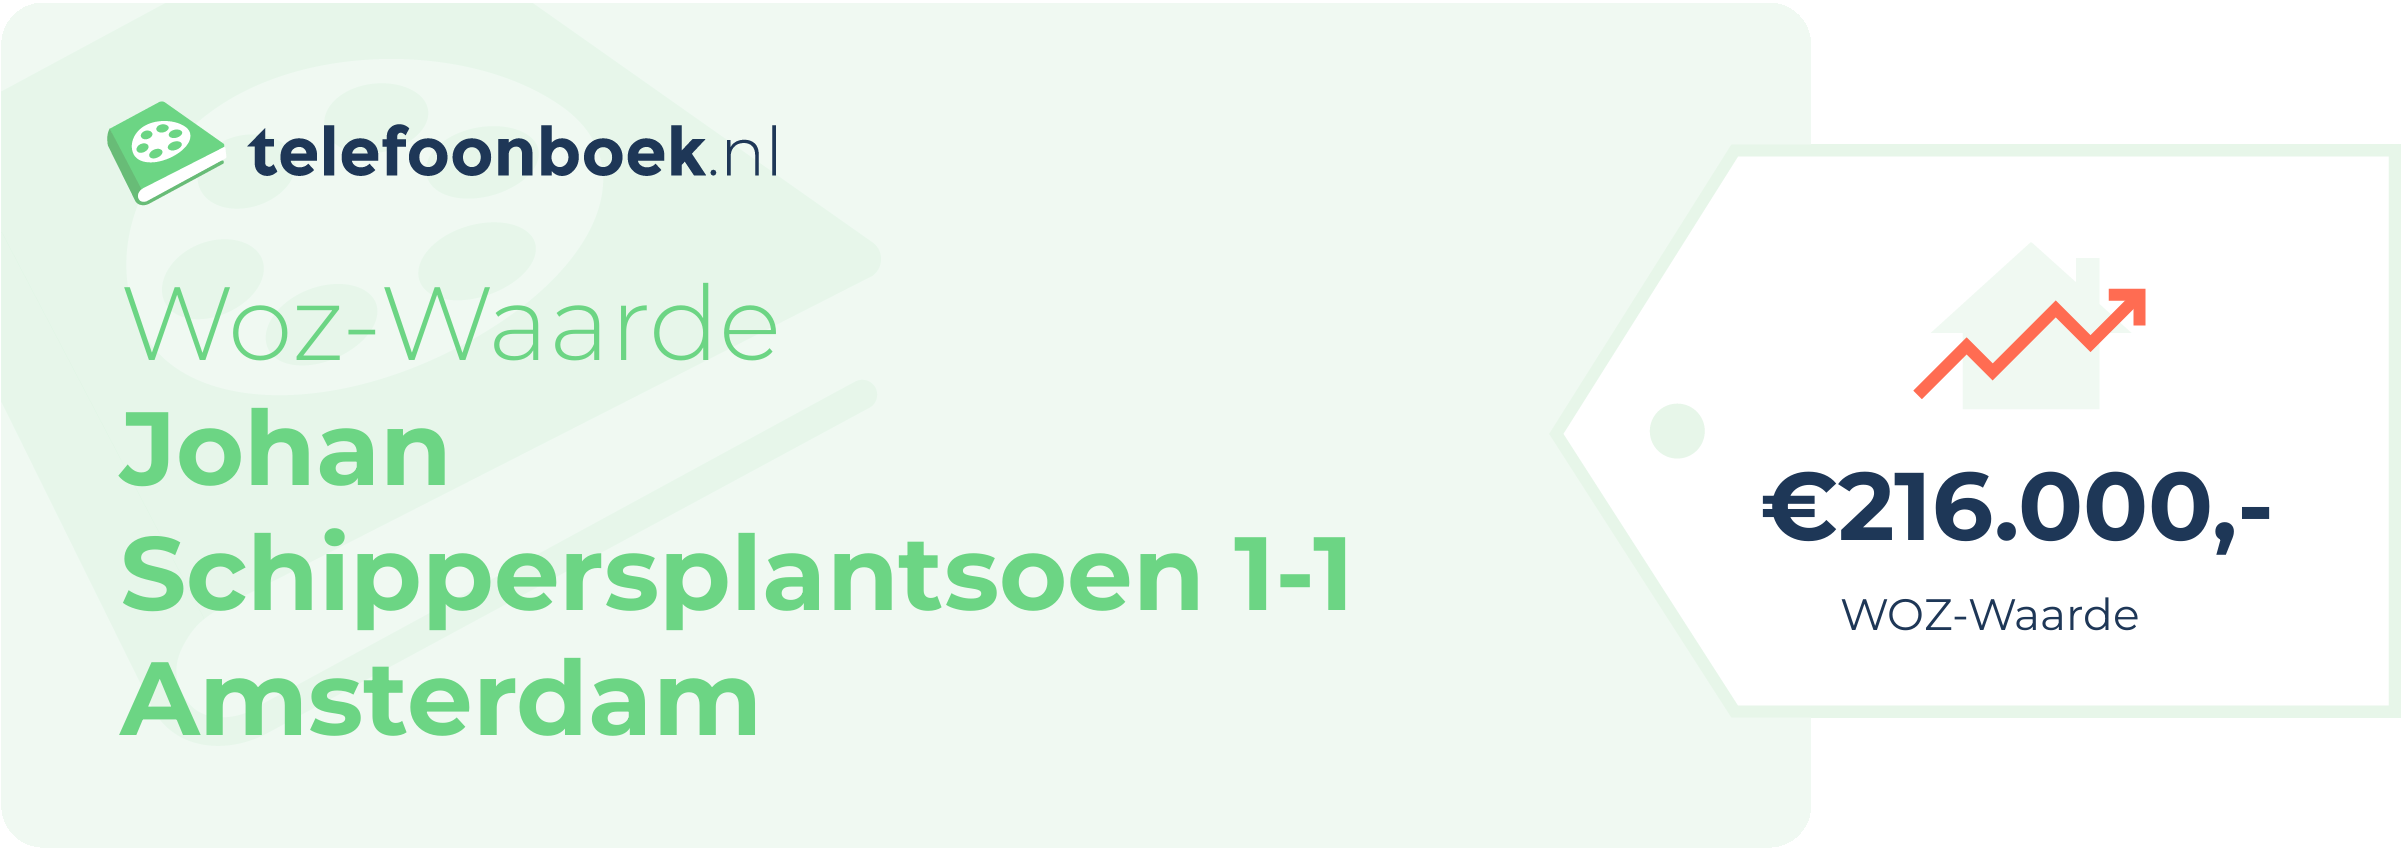 WOZ-waarde Johan Schippersplantsoen 1-1 Amsterdam